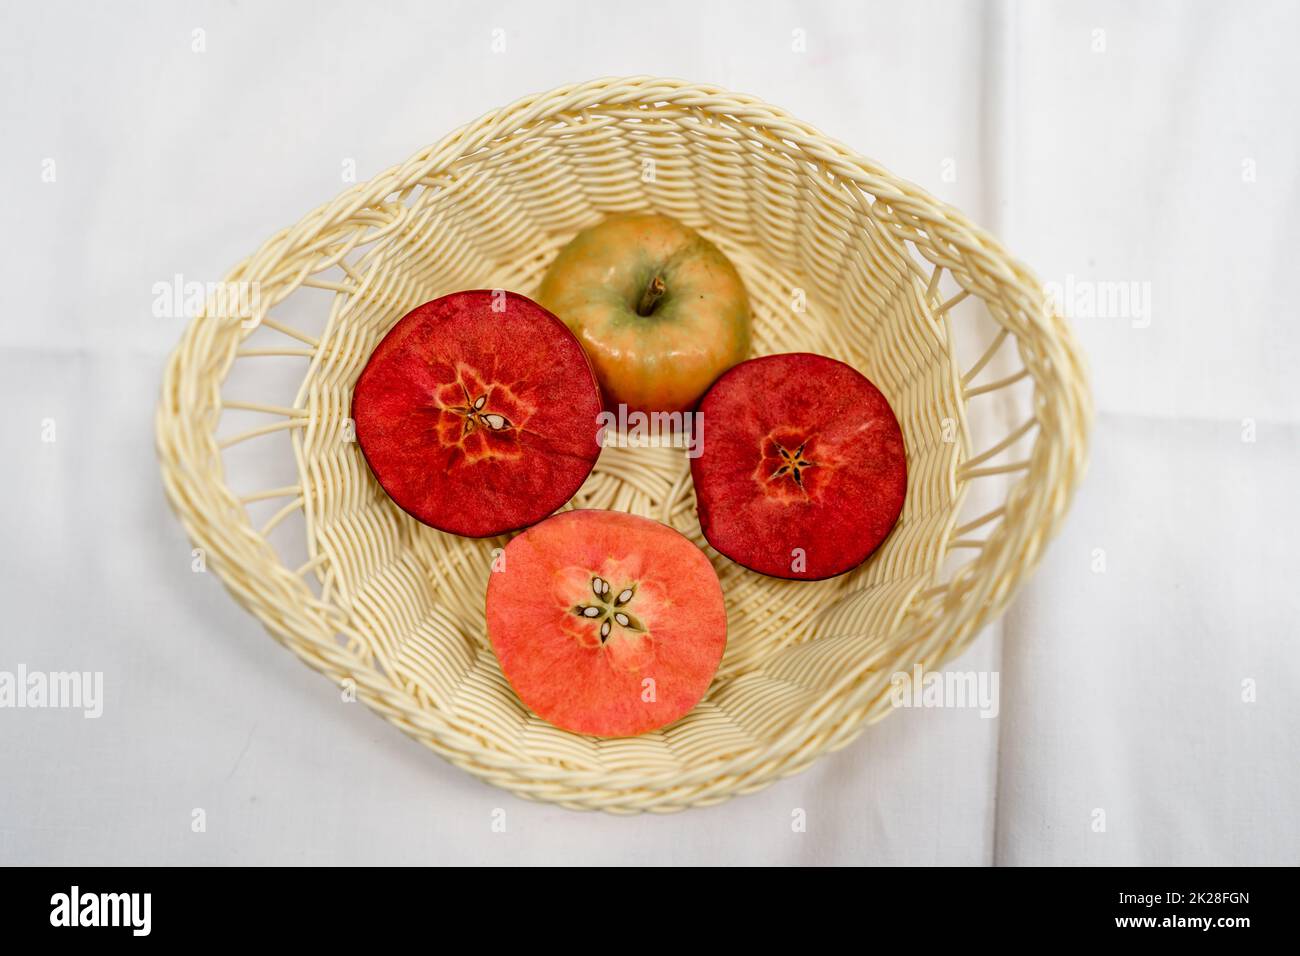 mele con modificazione genetica di colori diversi Foto Stock